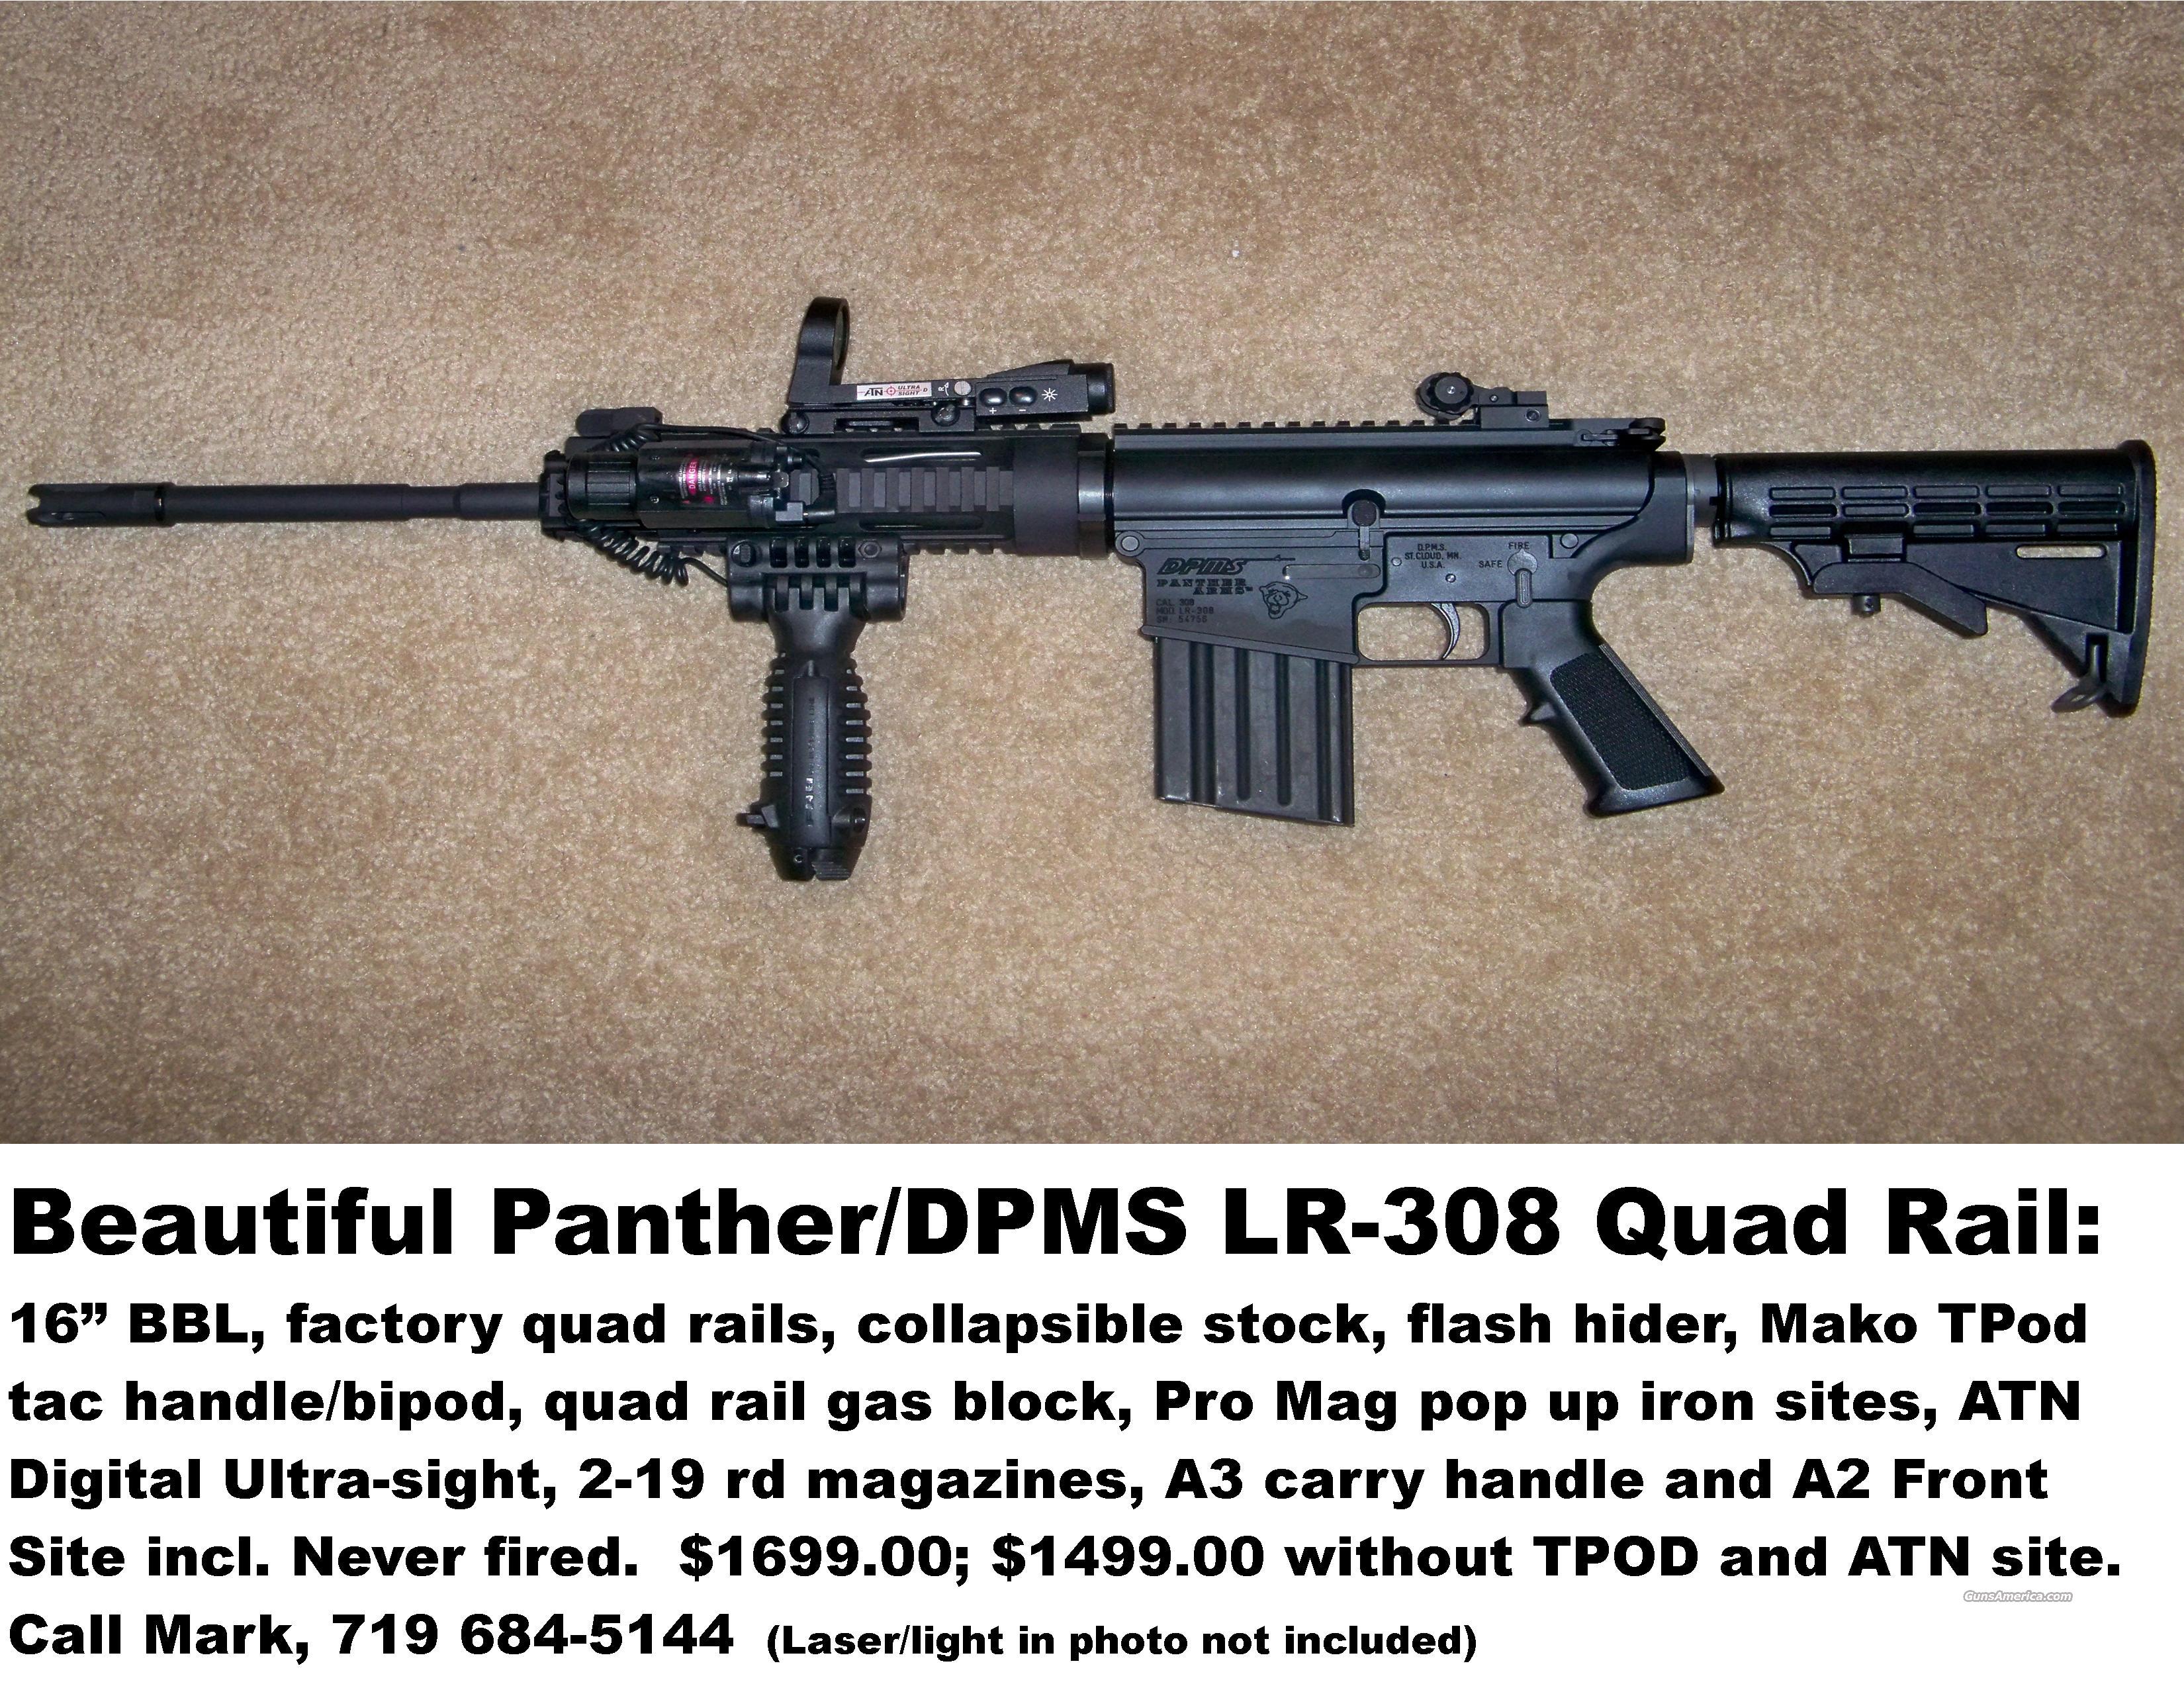 DPMS LR-308 Quad Rail for sale